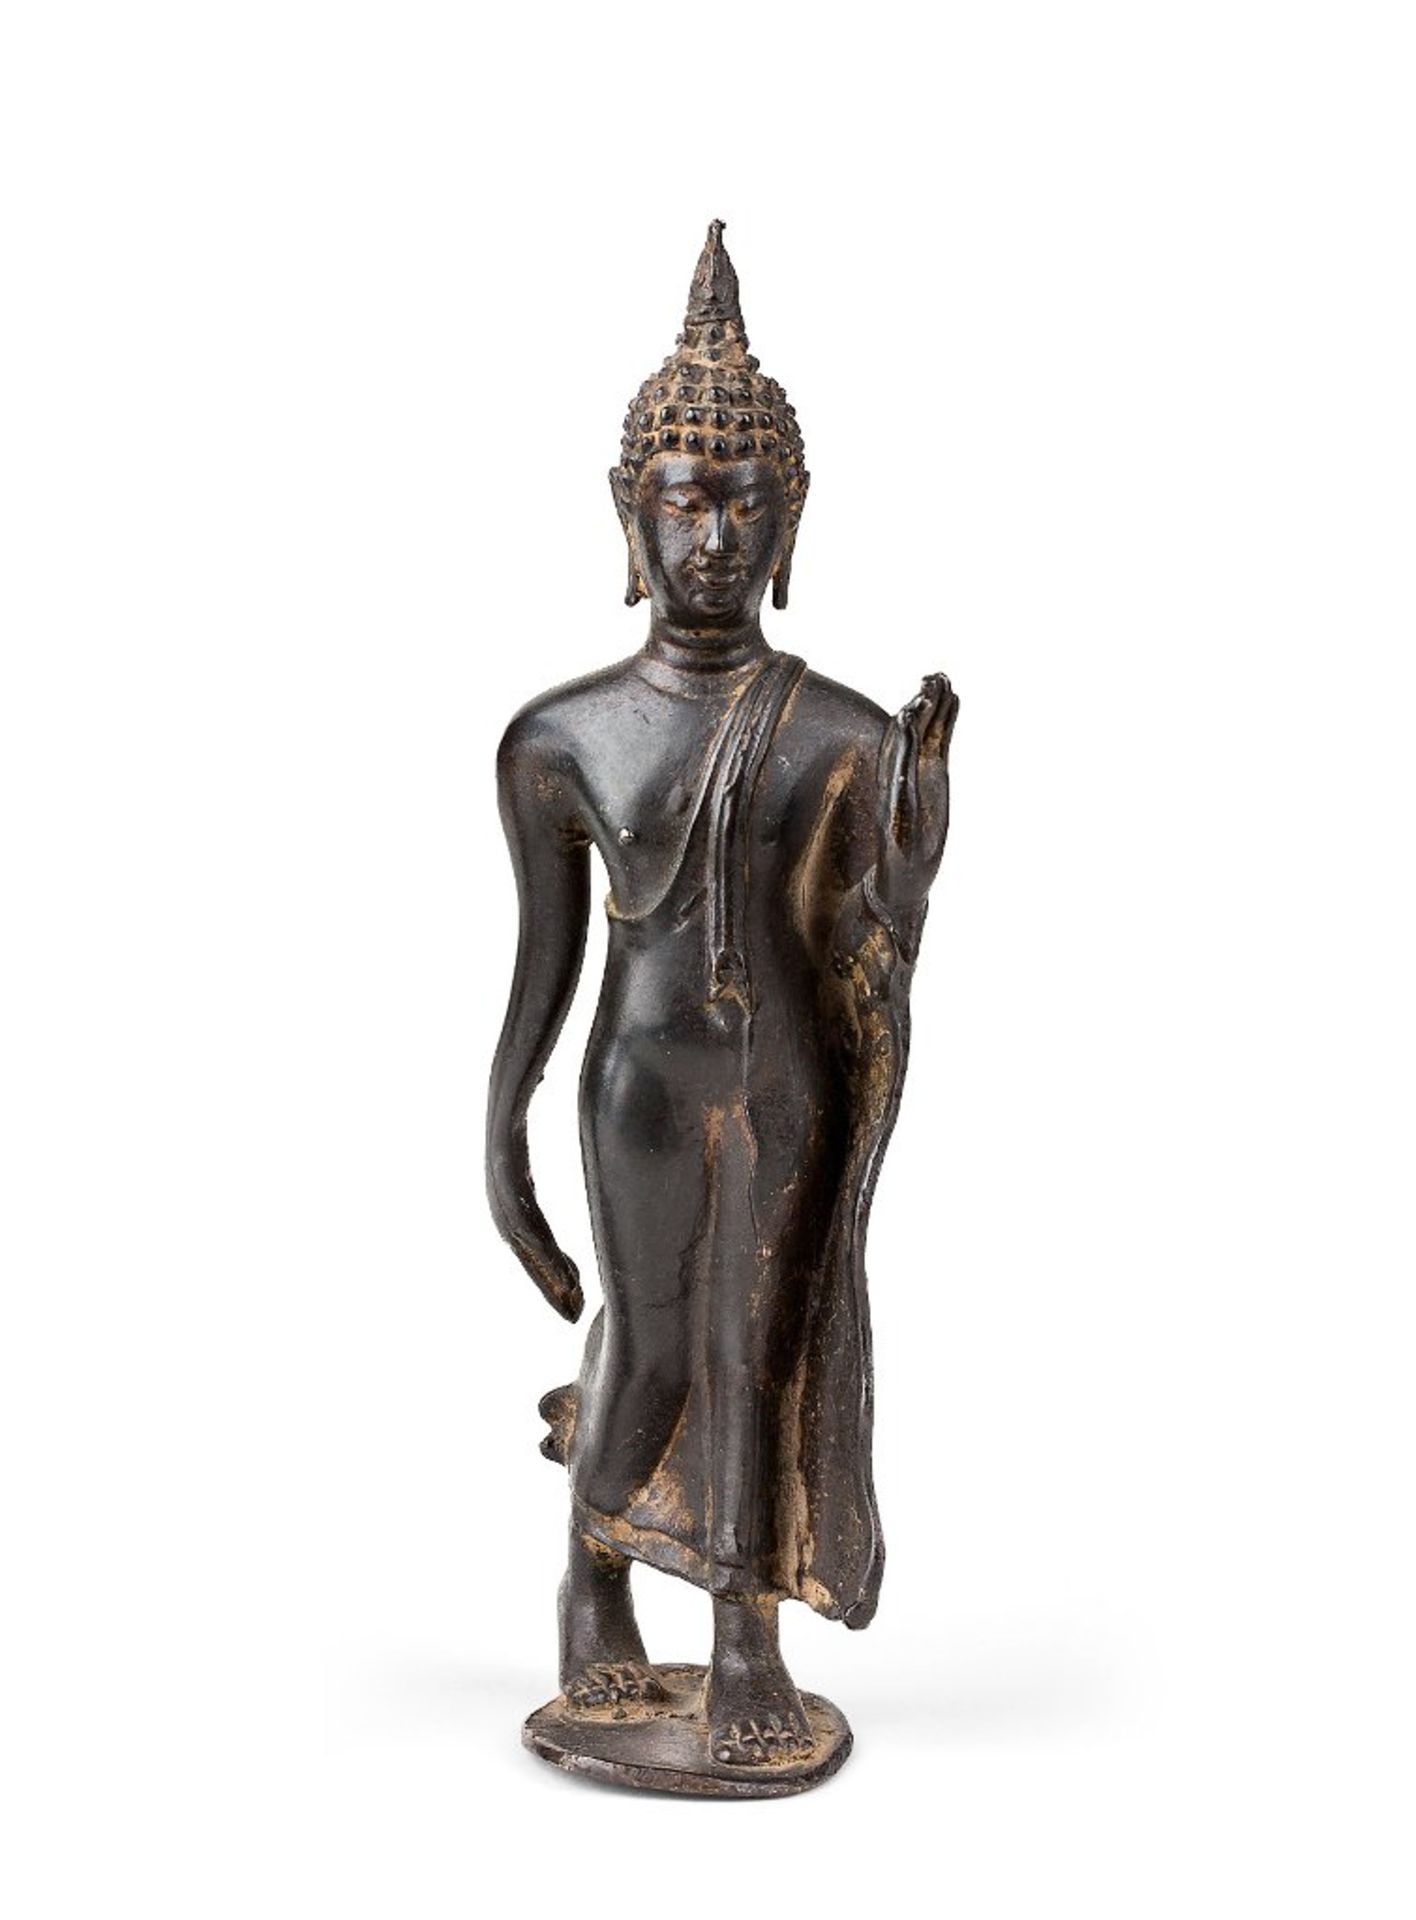 Schreitender Buddha mit Friedensgestus. Bronze. Südostasien, 19. Jh. H 13 cm